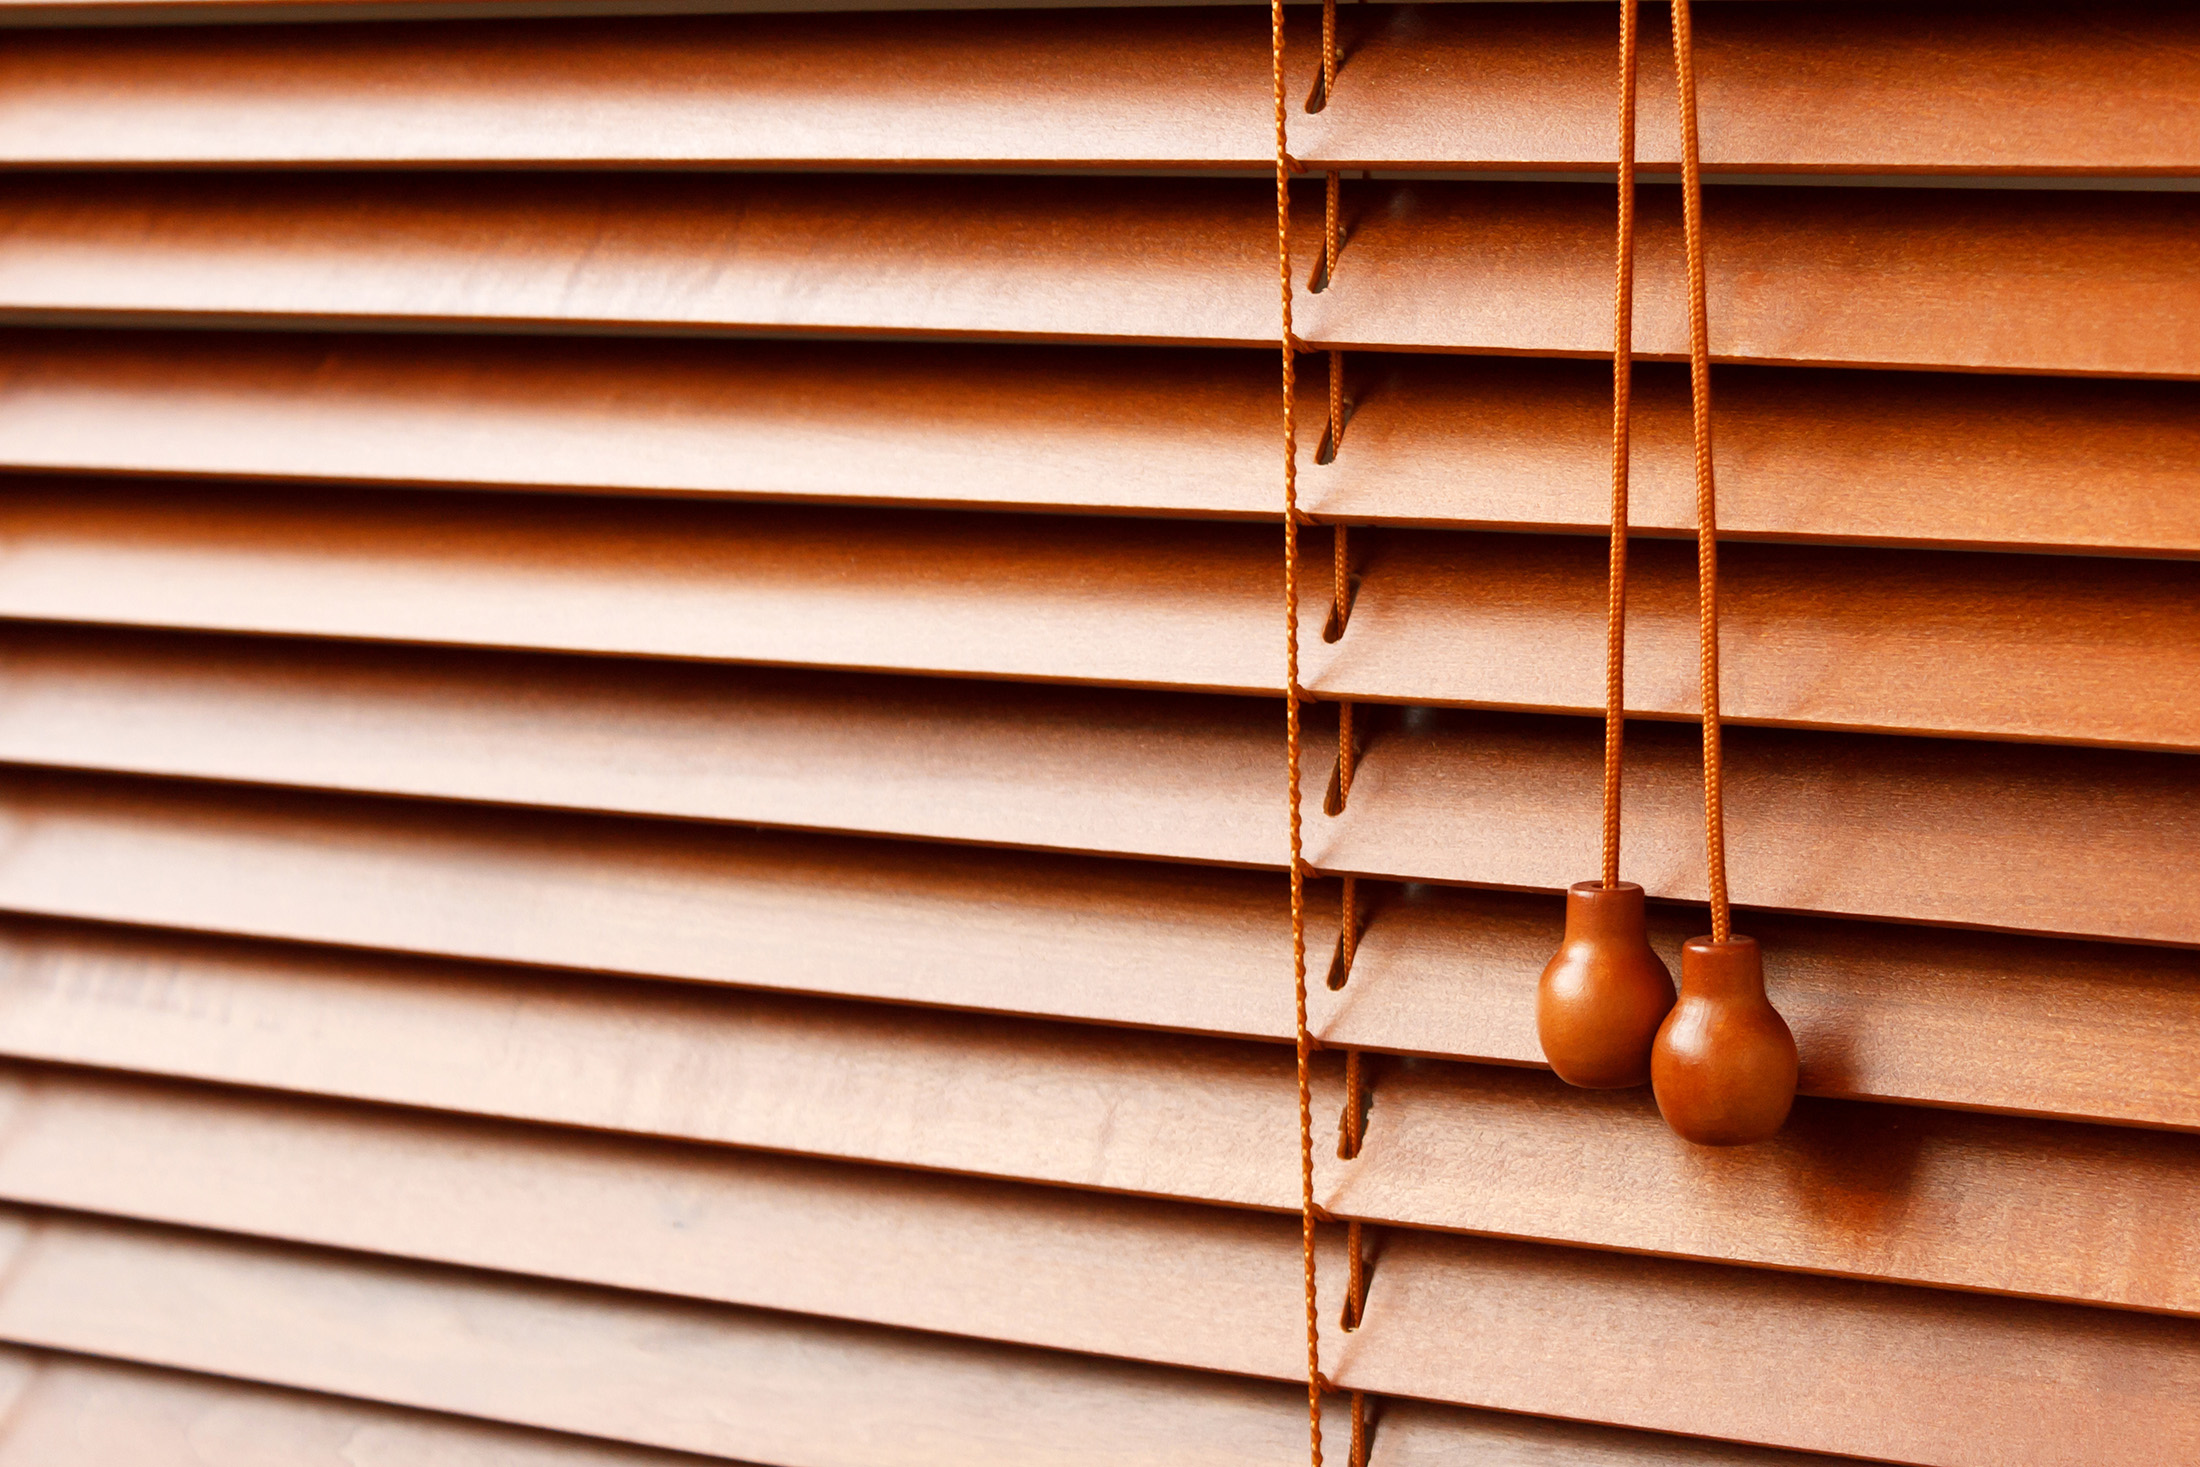 detalles de persiana de madera